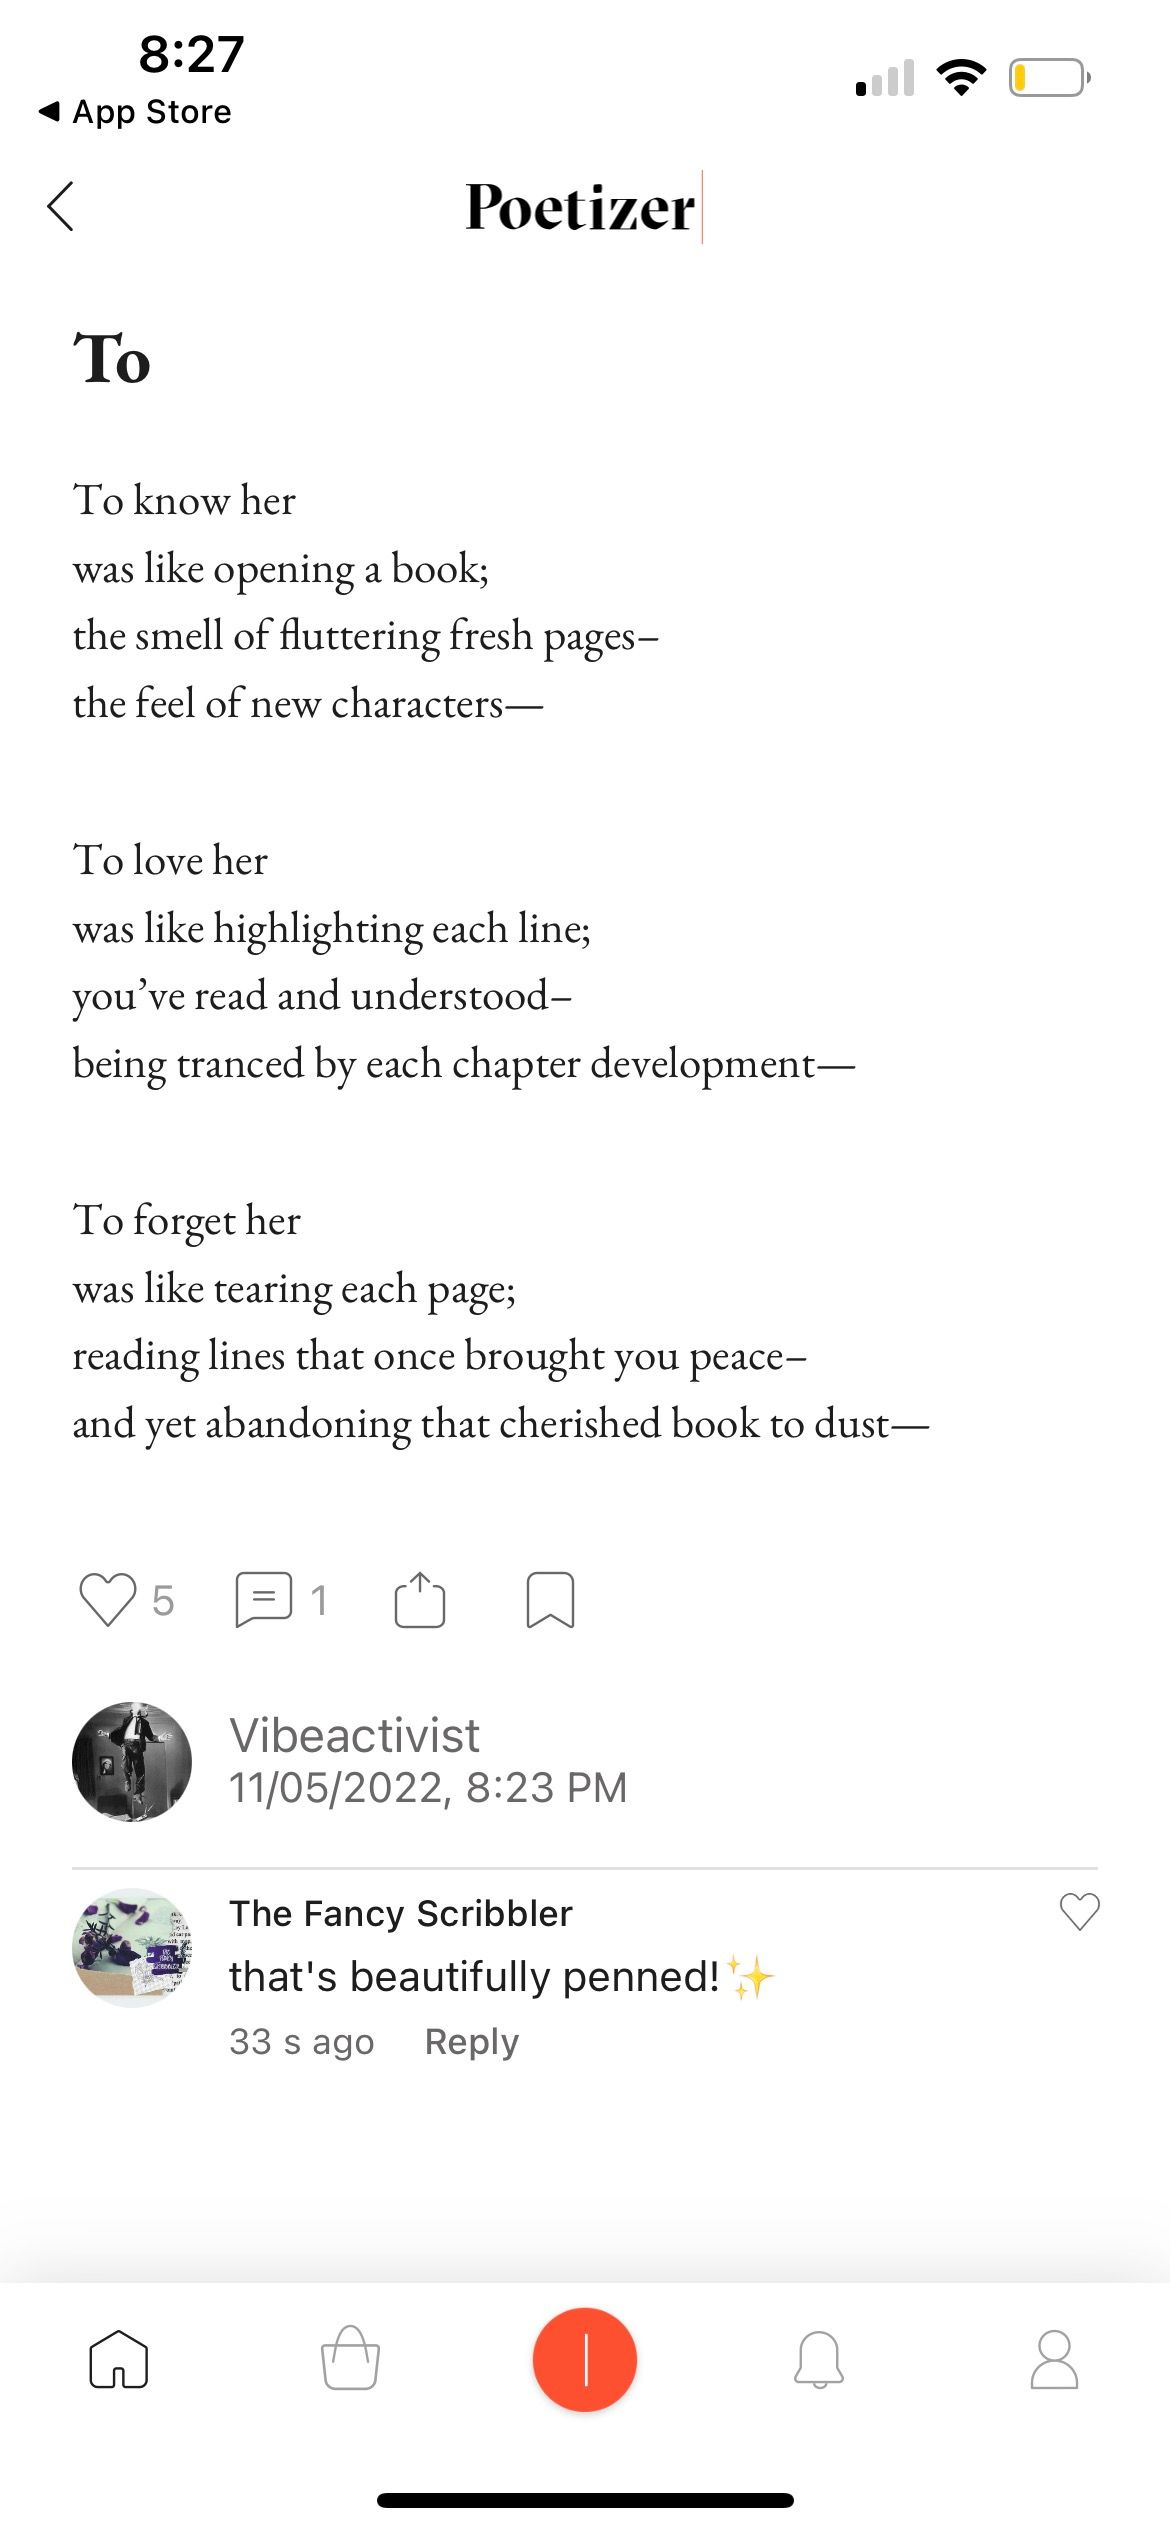 published poem on poetizer app 